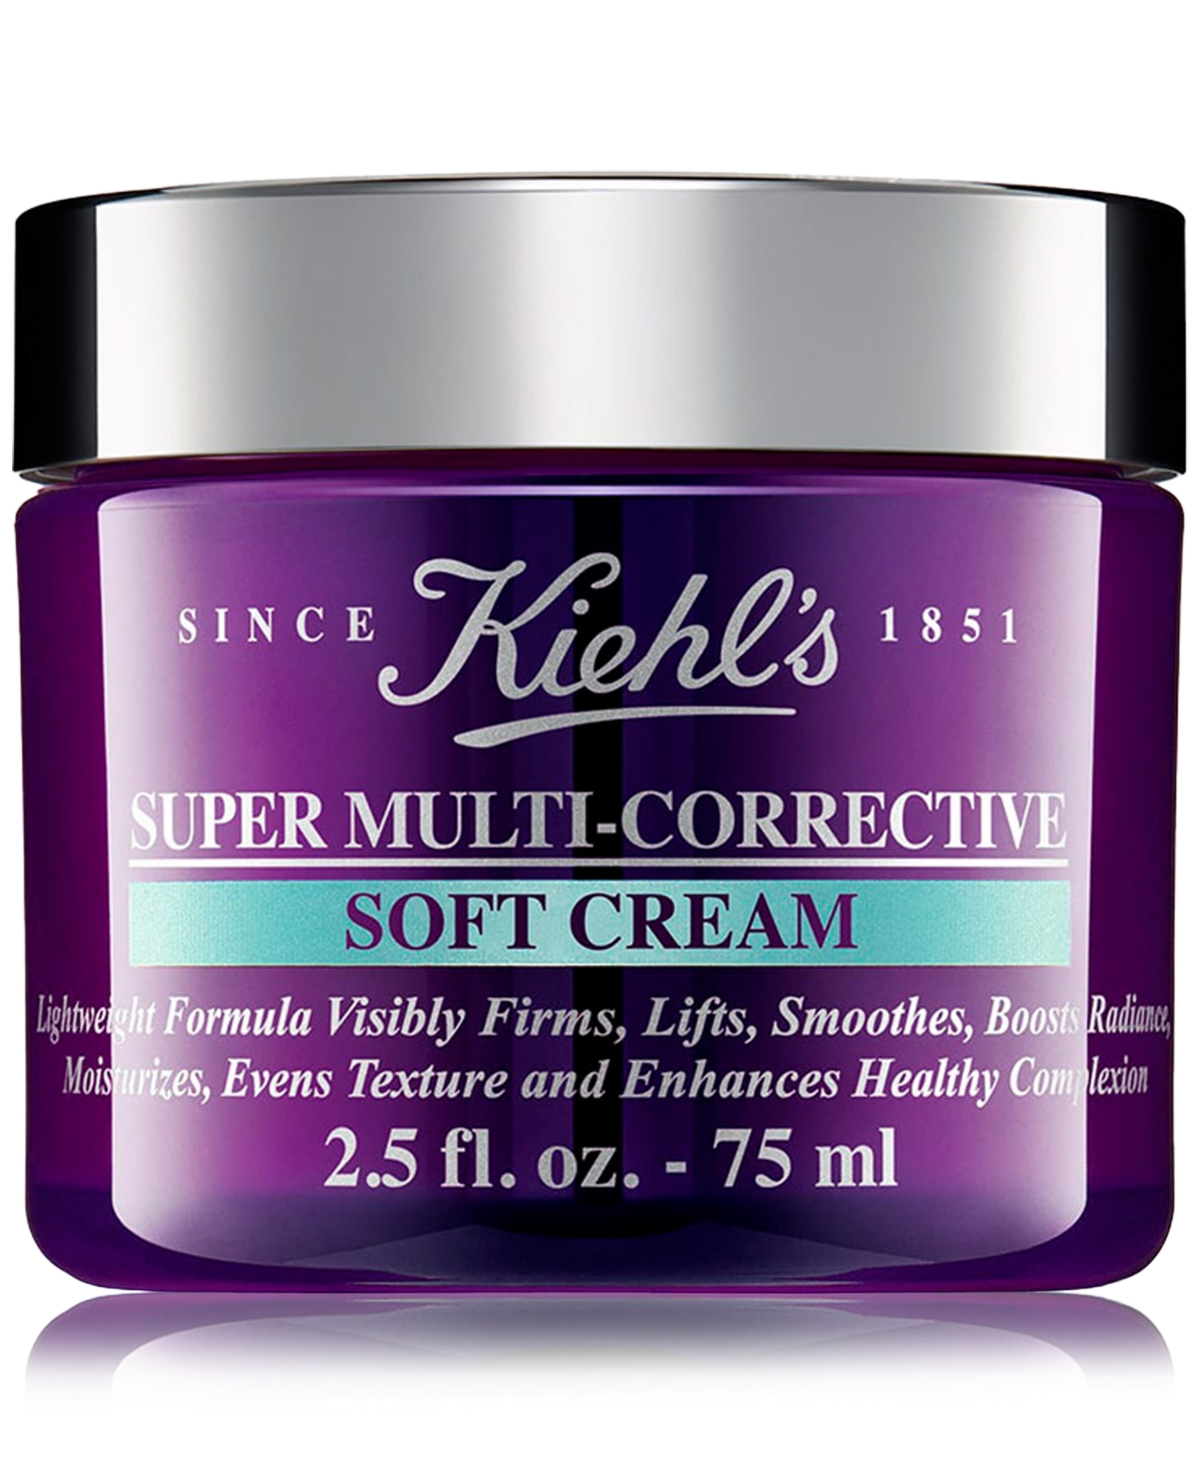 Super Multi-Corrective Anti-Aging Face & Neck Soft Cream, 2.5 oz.